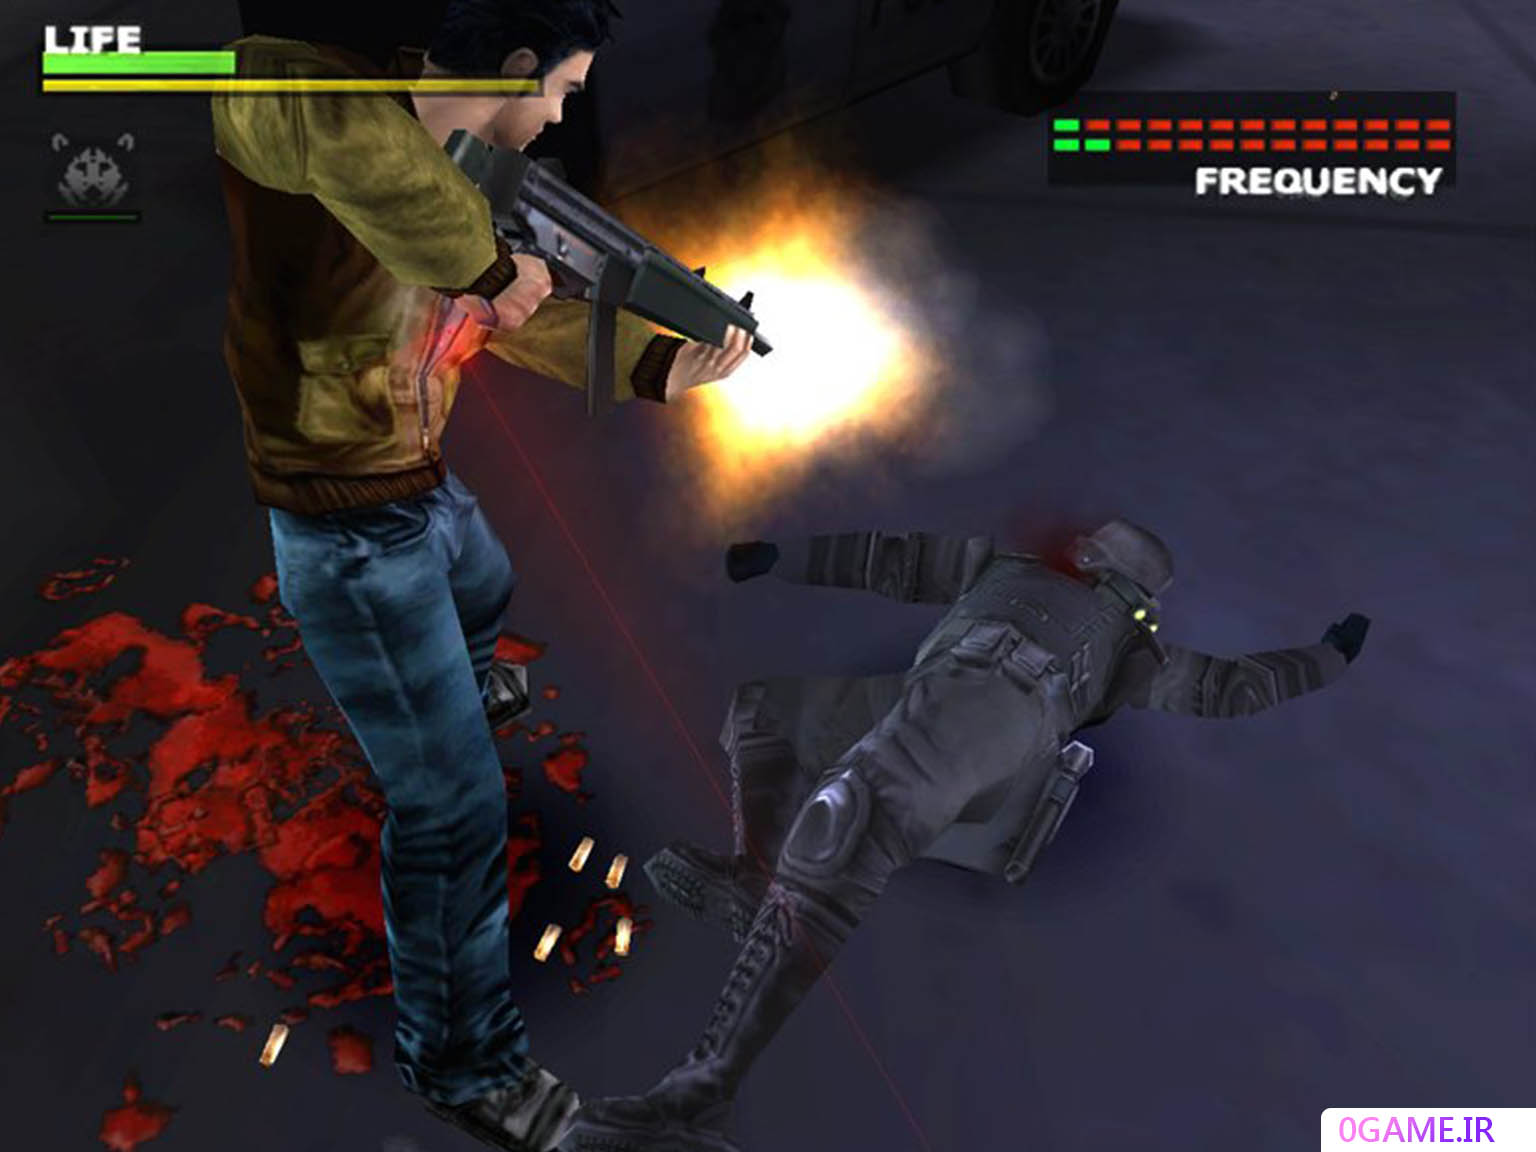 دانلود بازی مستقیم به سمت مرگ 1 (Dead to Rights) نسخه کامل برای کامپیوتر